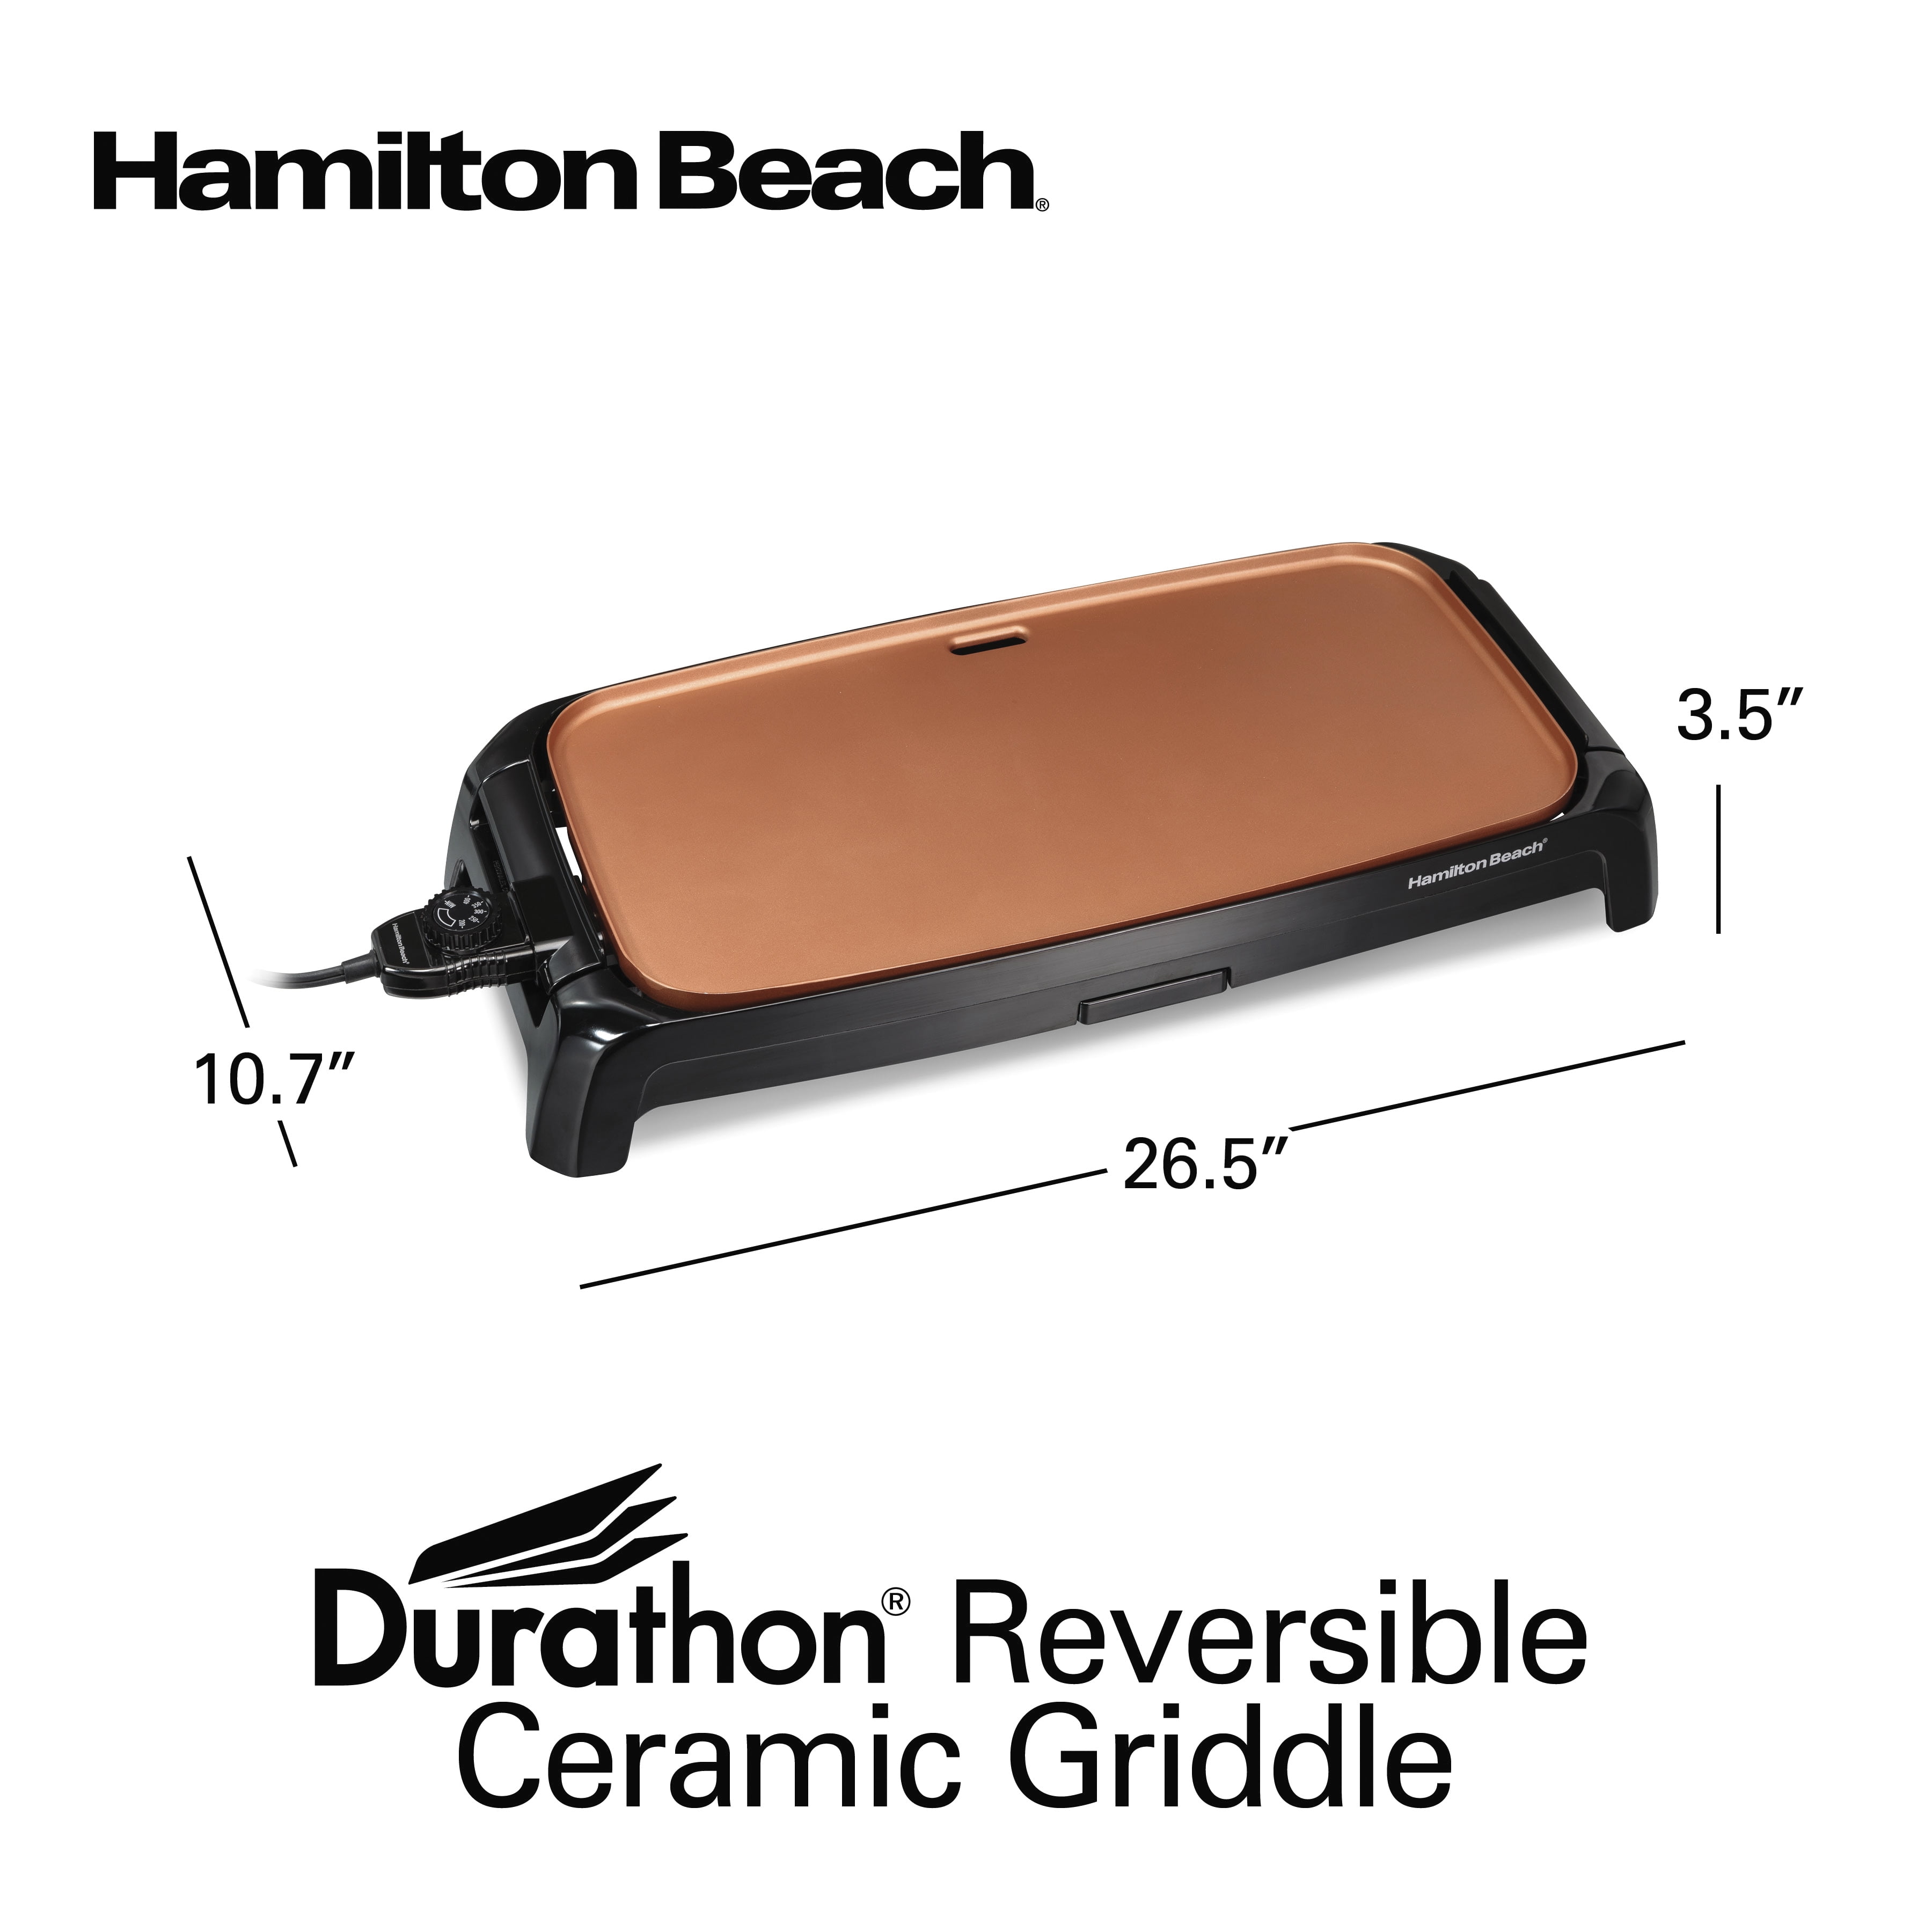 Hamilton Beach Durathon® Ceramic Griddle - 38521